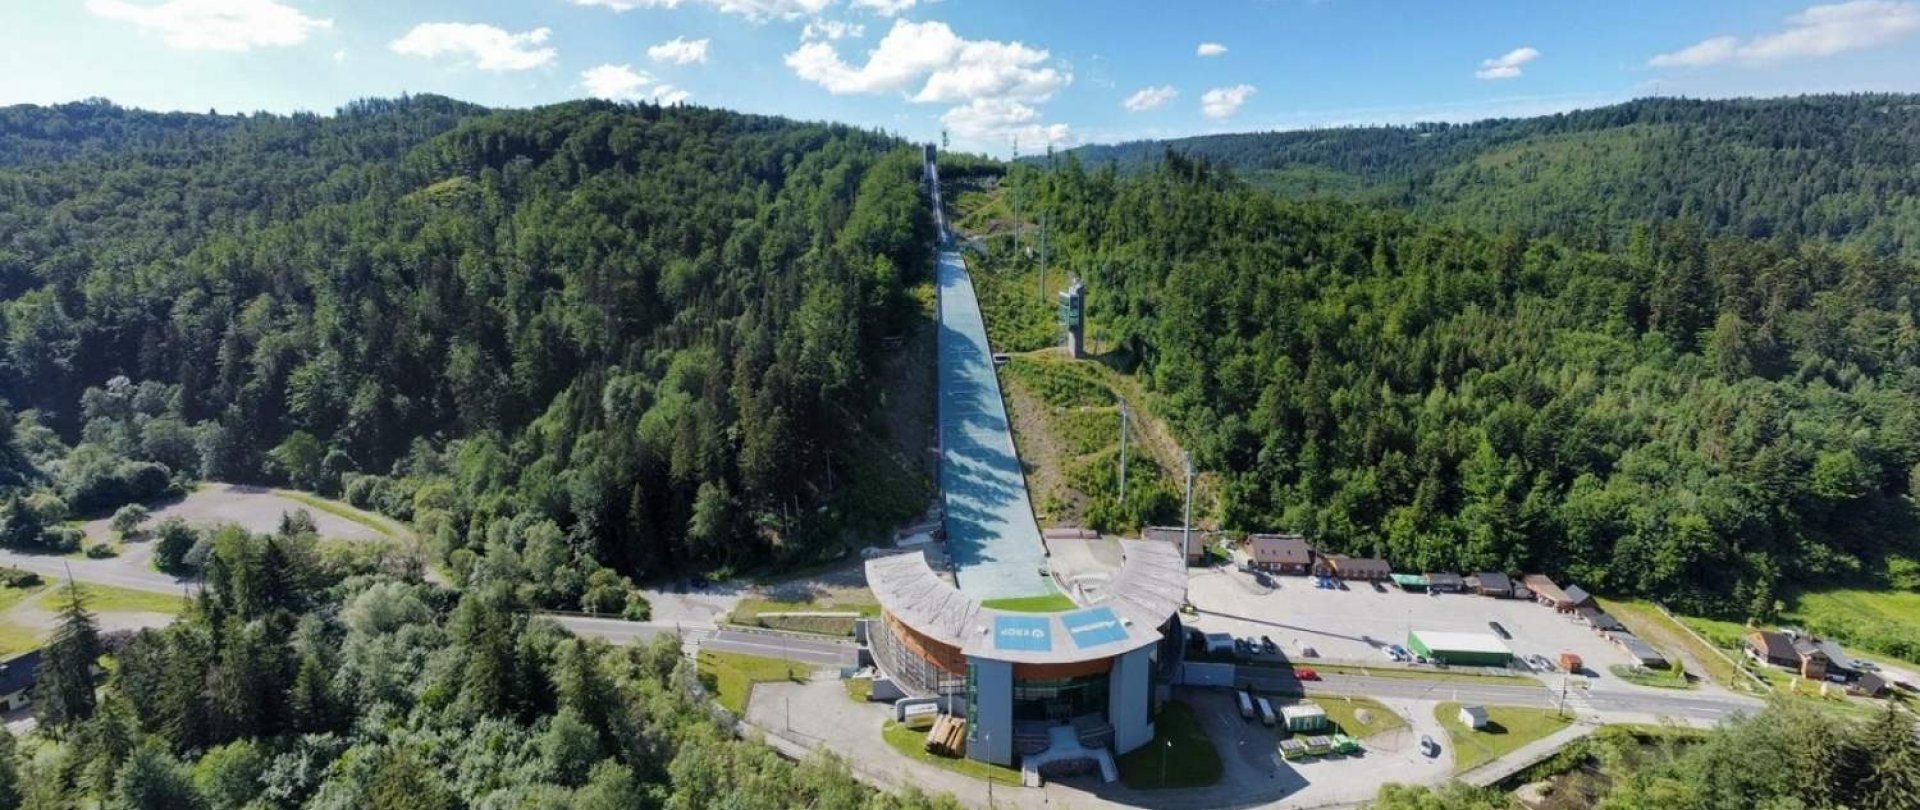 Wisła a skoky na lyžích – Letní Grand Prix a Světový pohár 2022